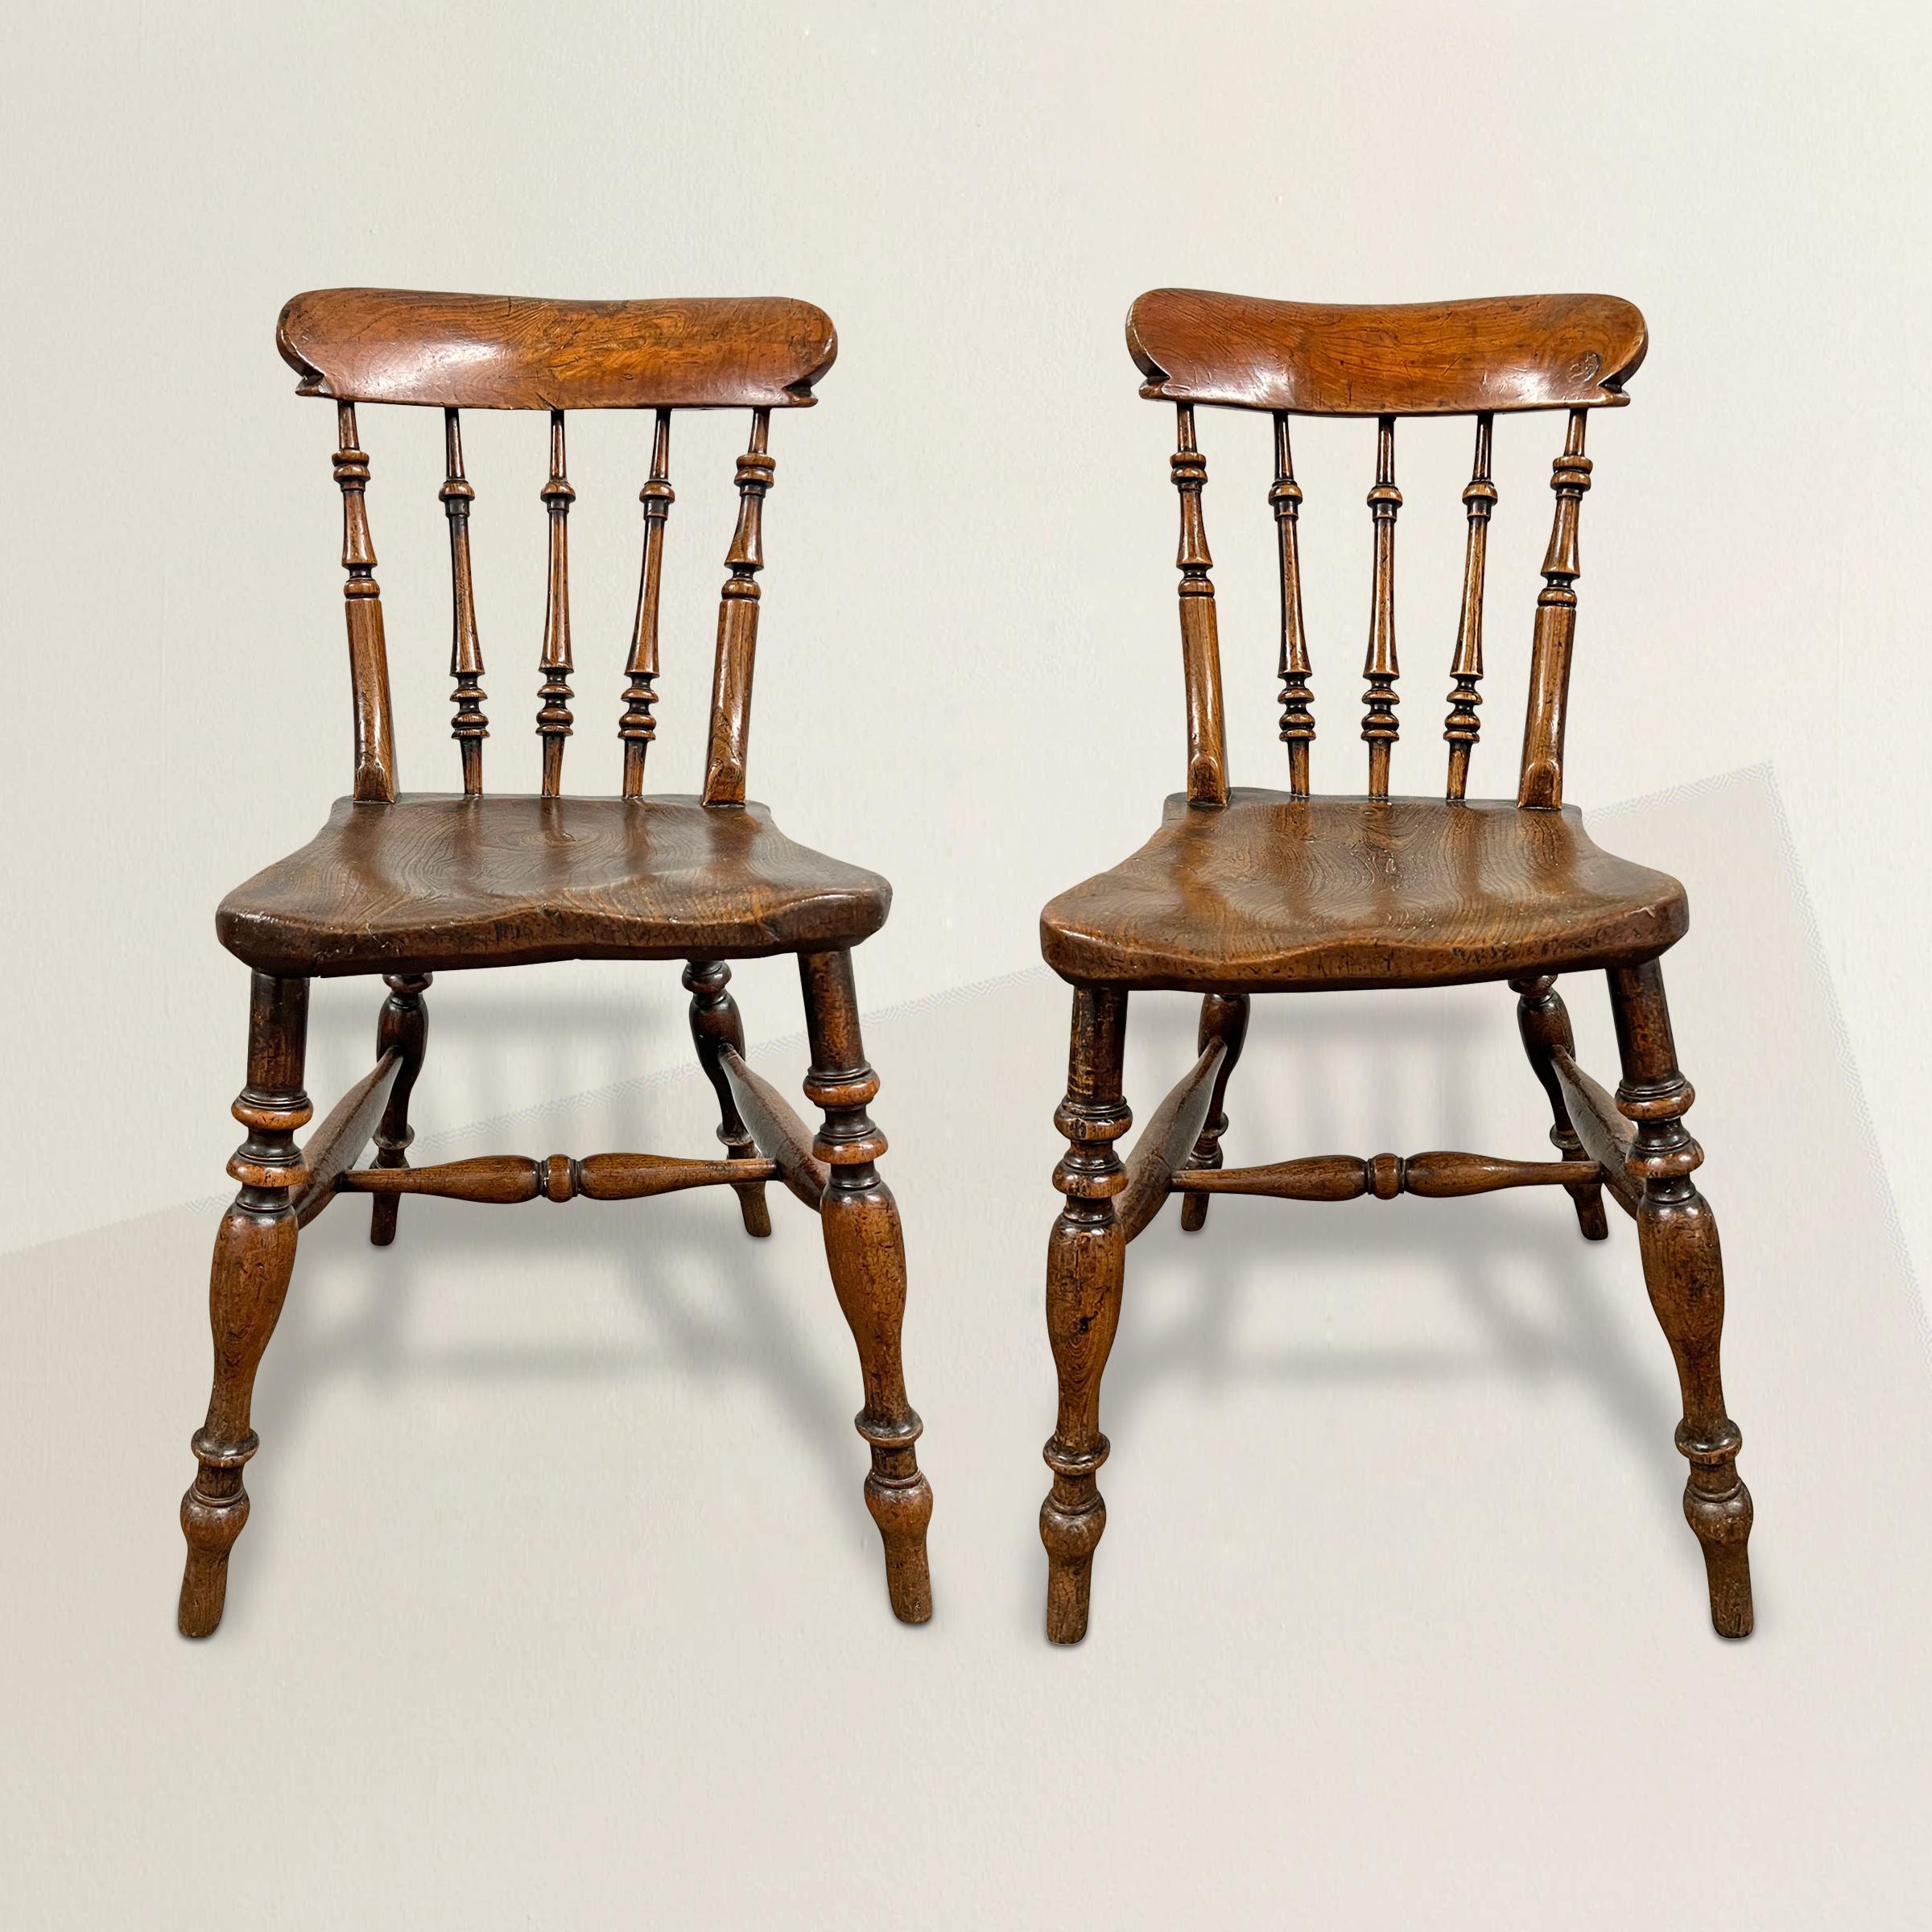 Une superbe paire de chaises d'appoint en bois d'orme du début du 19e siècle, chacune avec des sièges en orme massif soutenus par des pieds et des traverses tournés, et des dossiers avec des lattes tournées soutenant des rails de crête épais, et